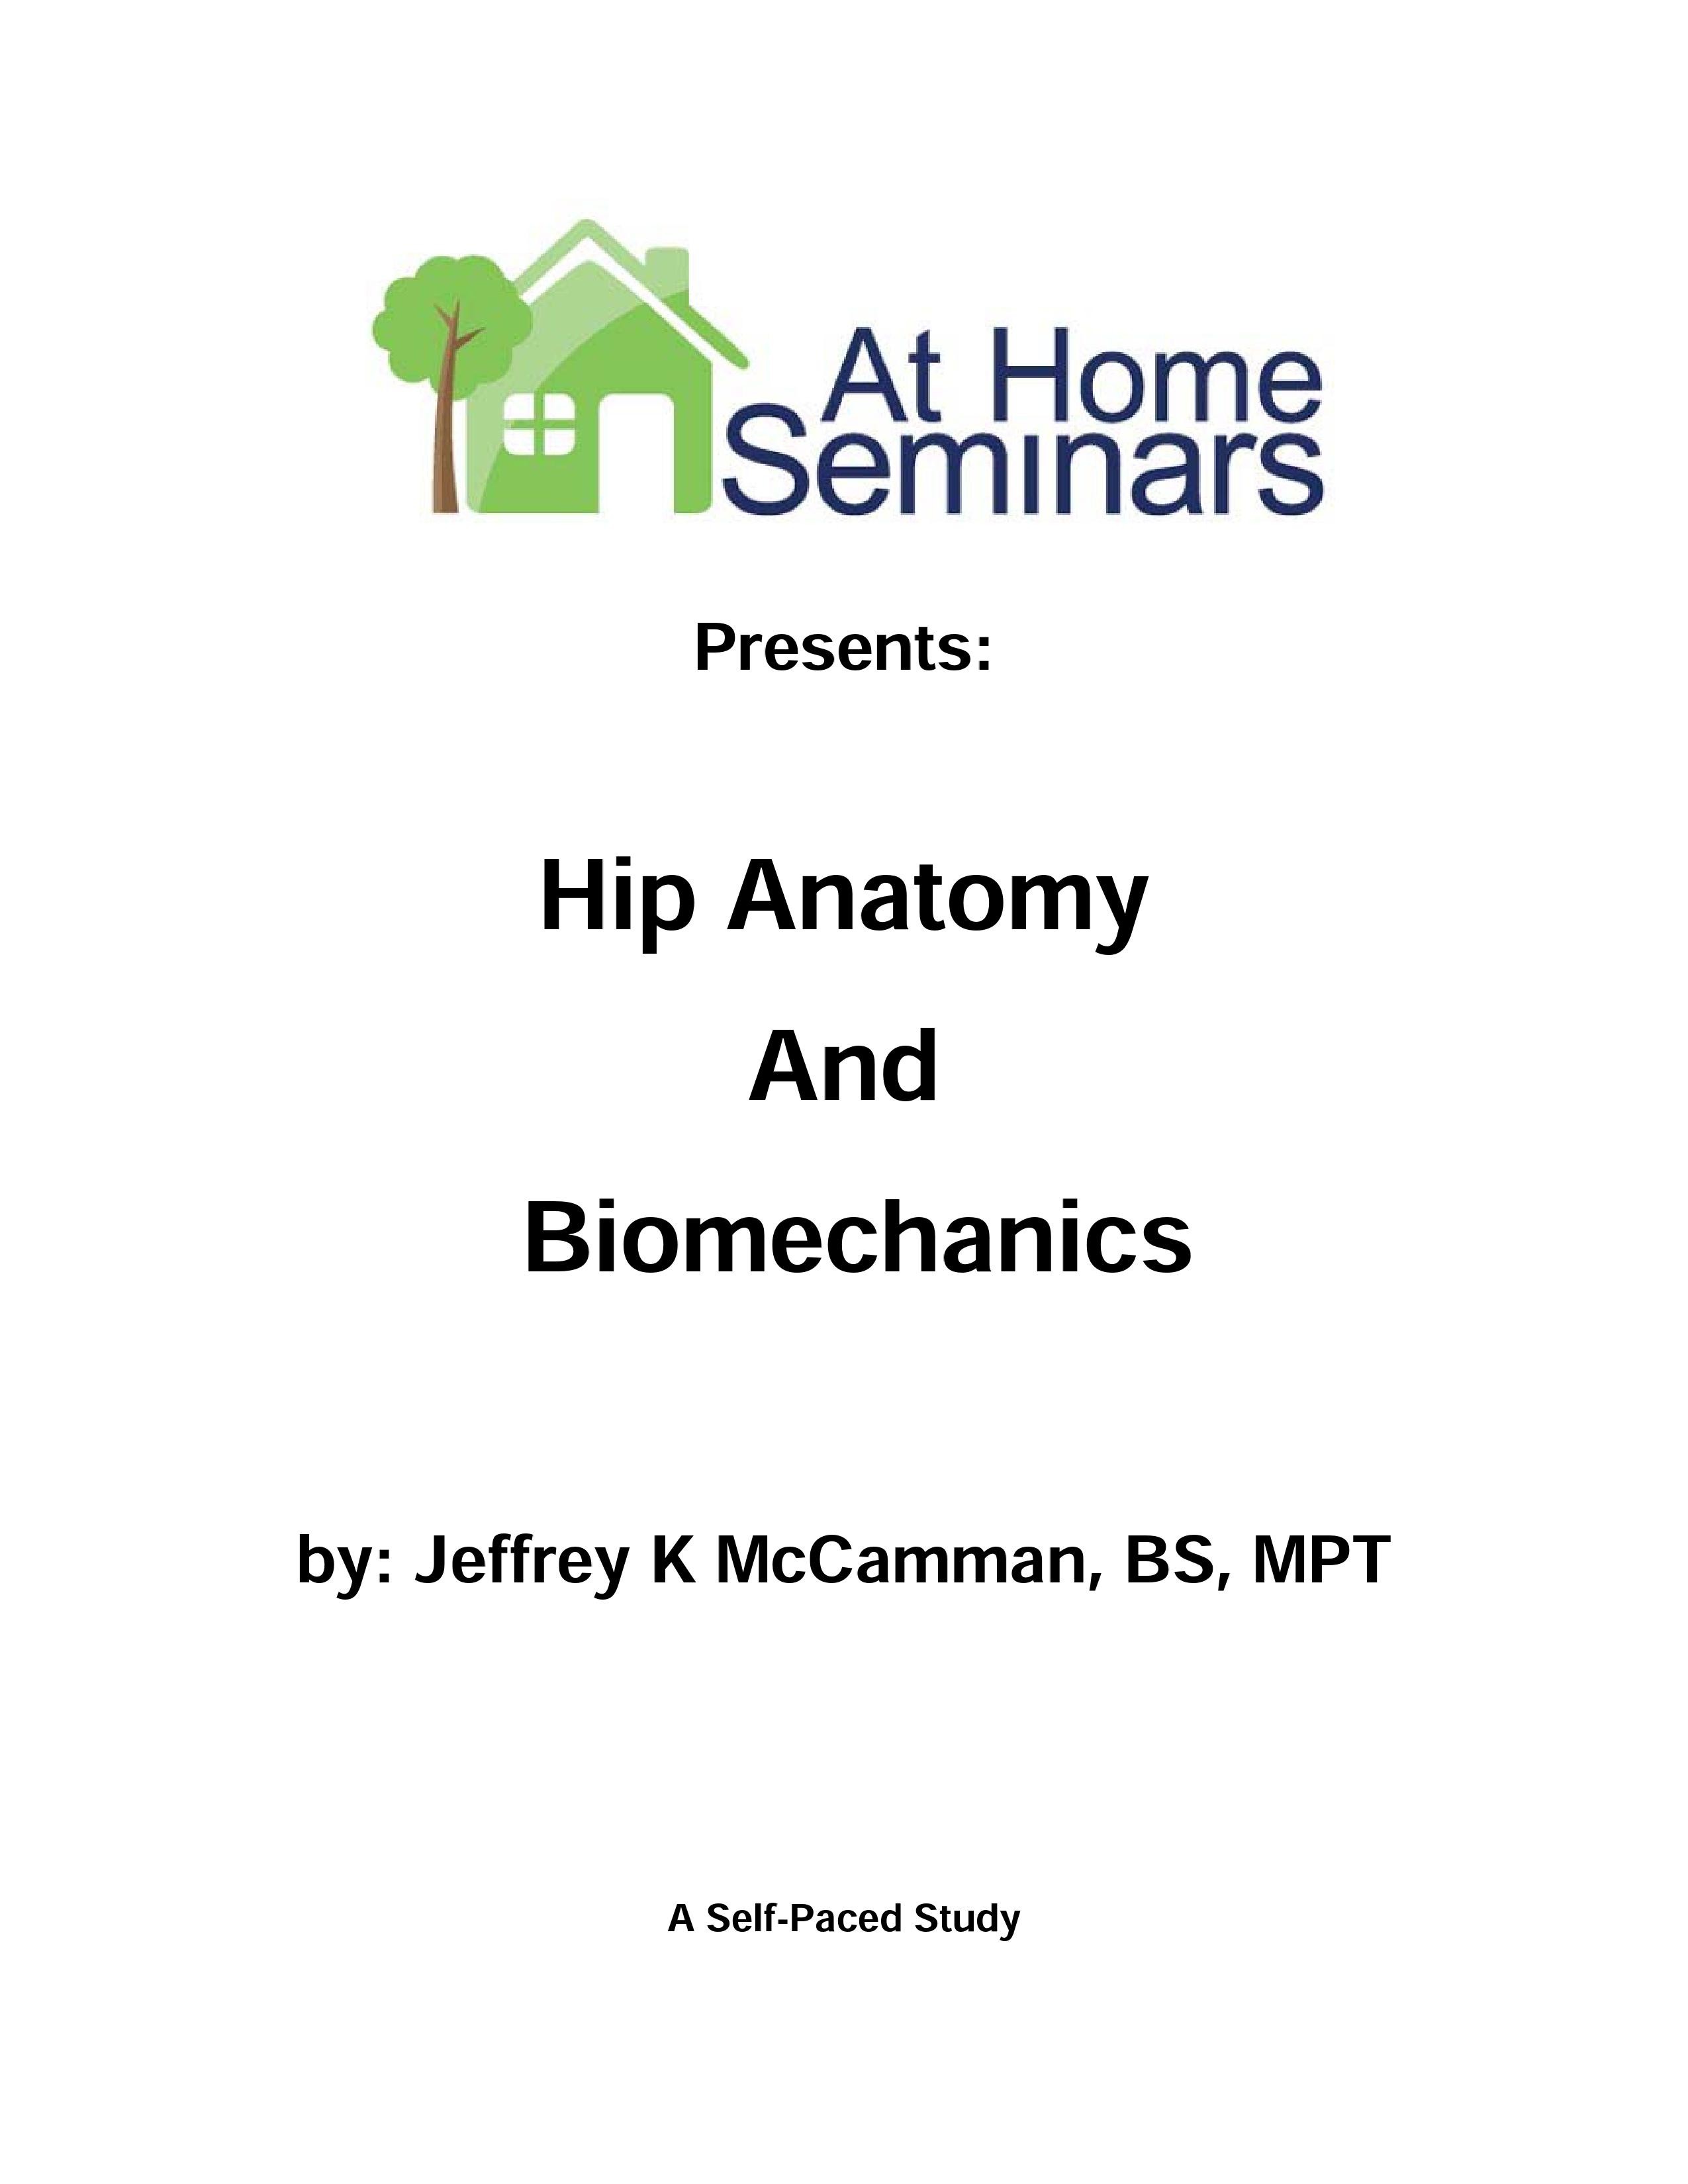 Hip Anatomy & Biomechanics